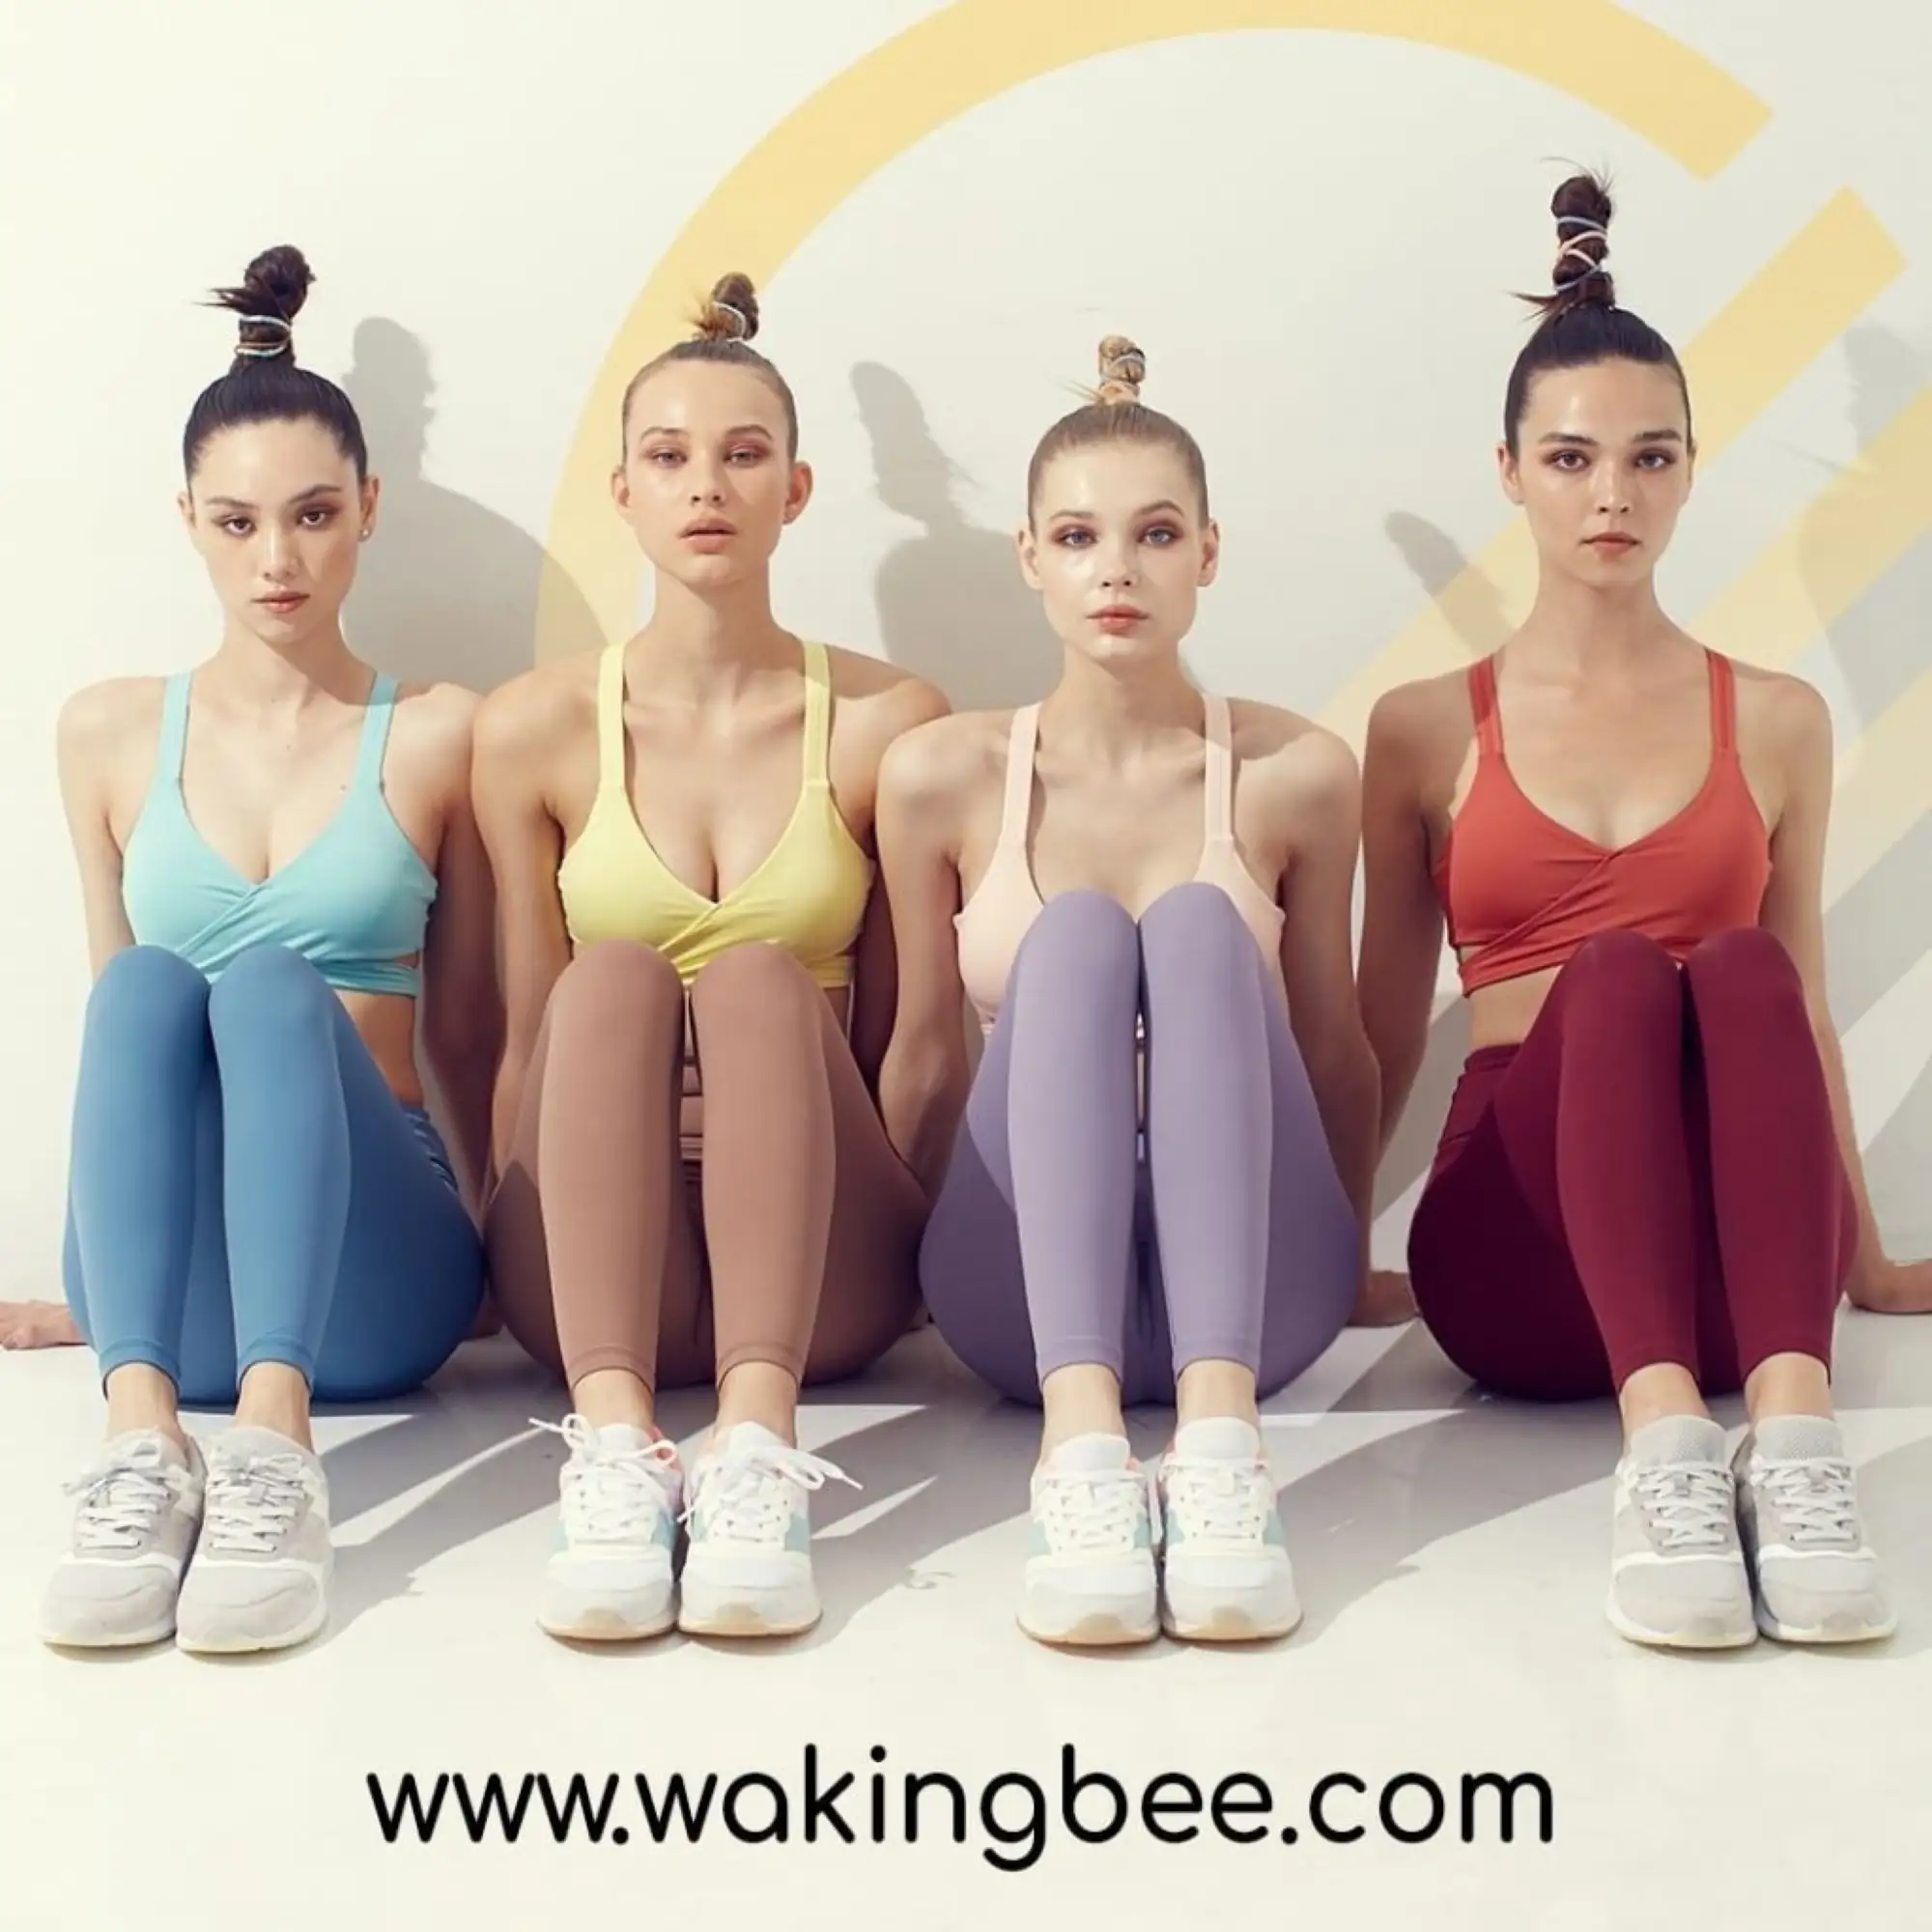 WAKINGBEE 以出色的女性运动装设计和鲜艳亮丽的颜色而被人熟知（图片来源：mthai）